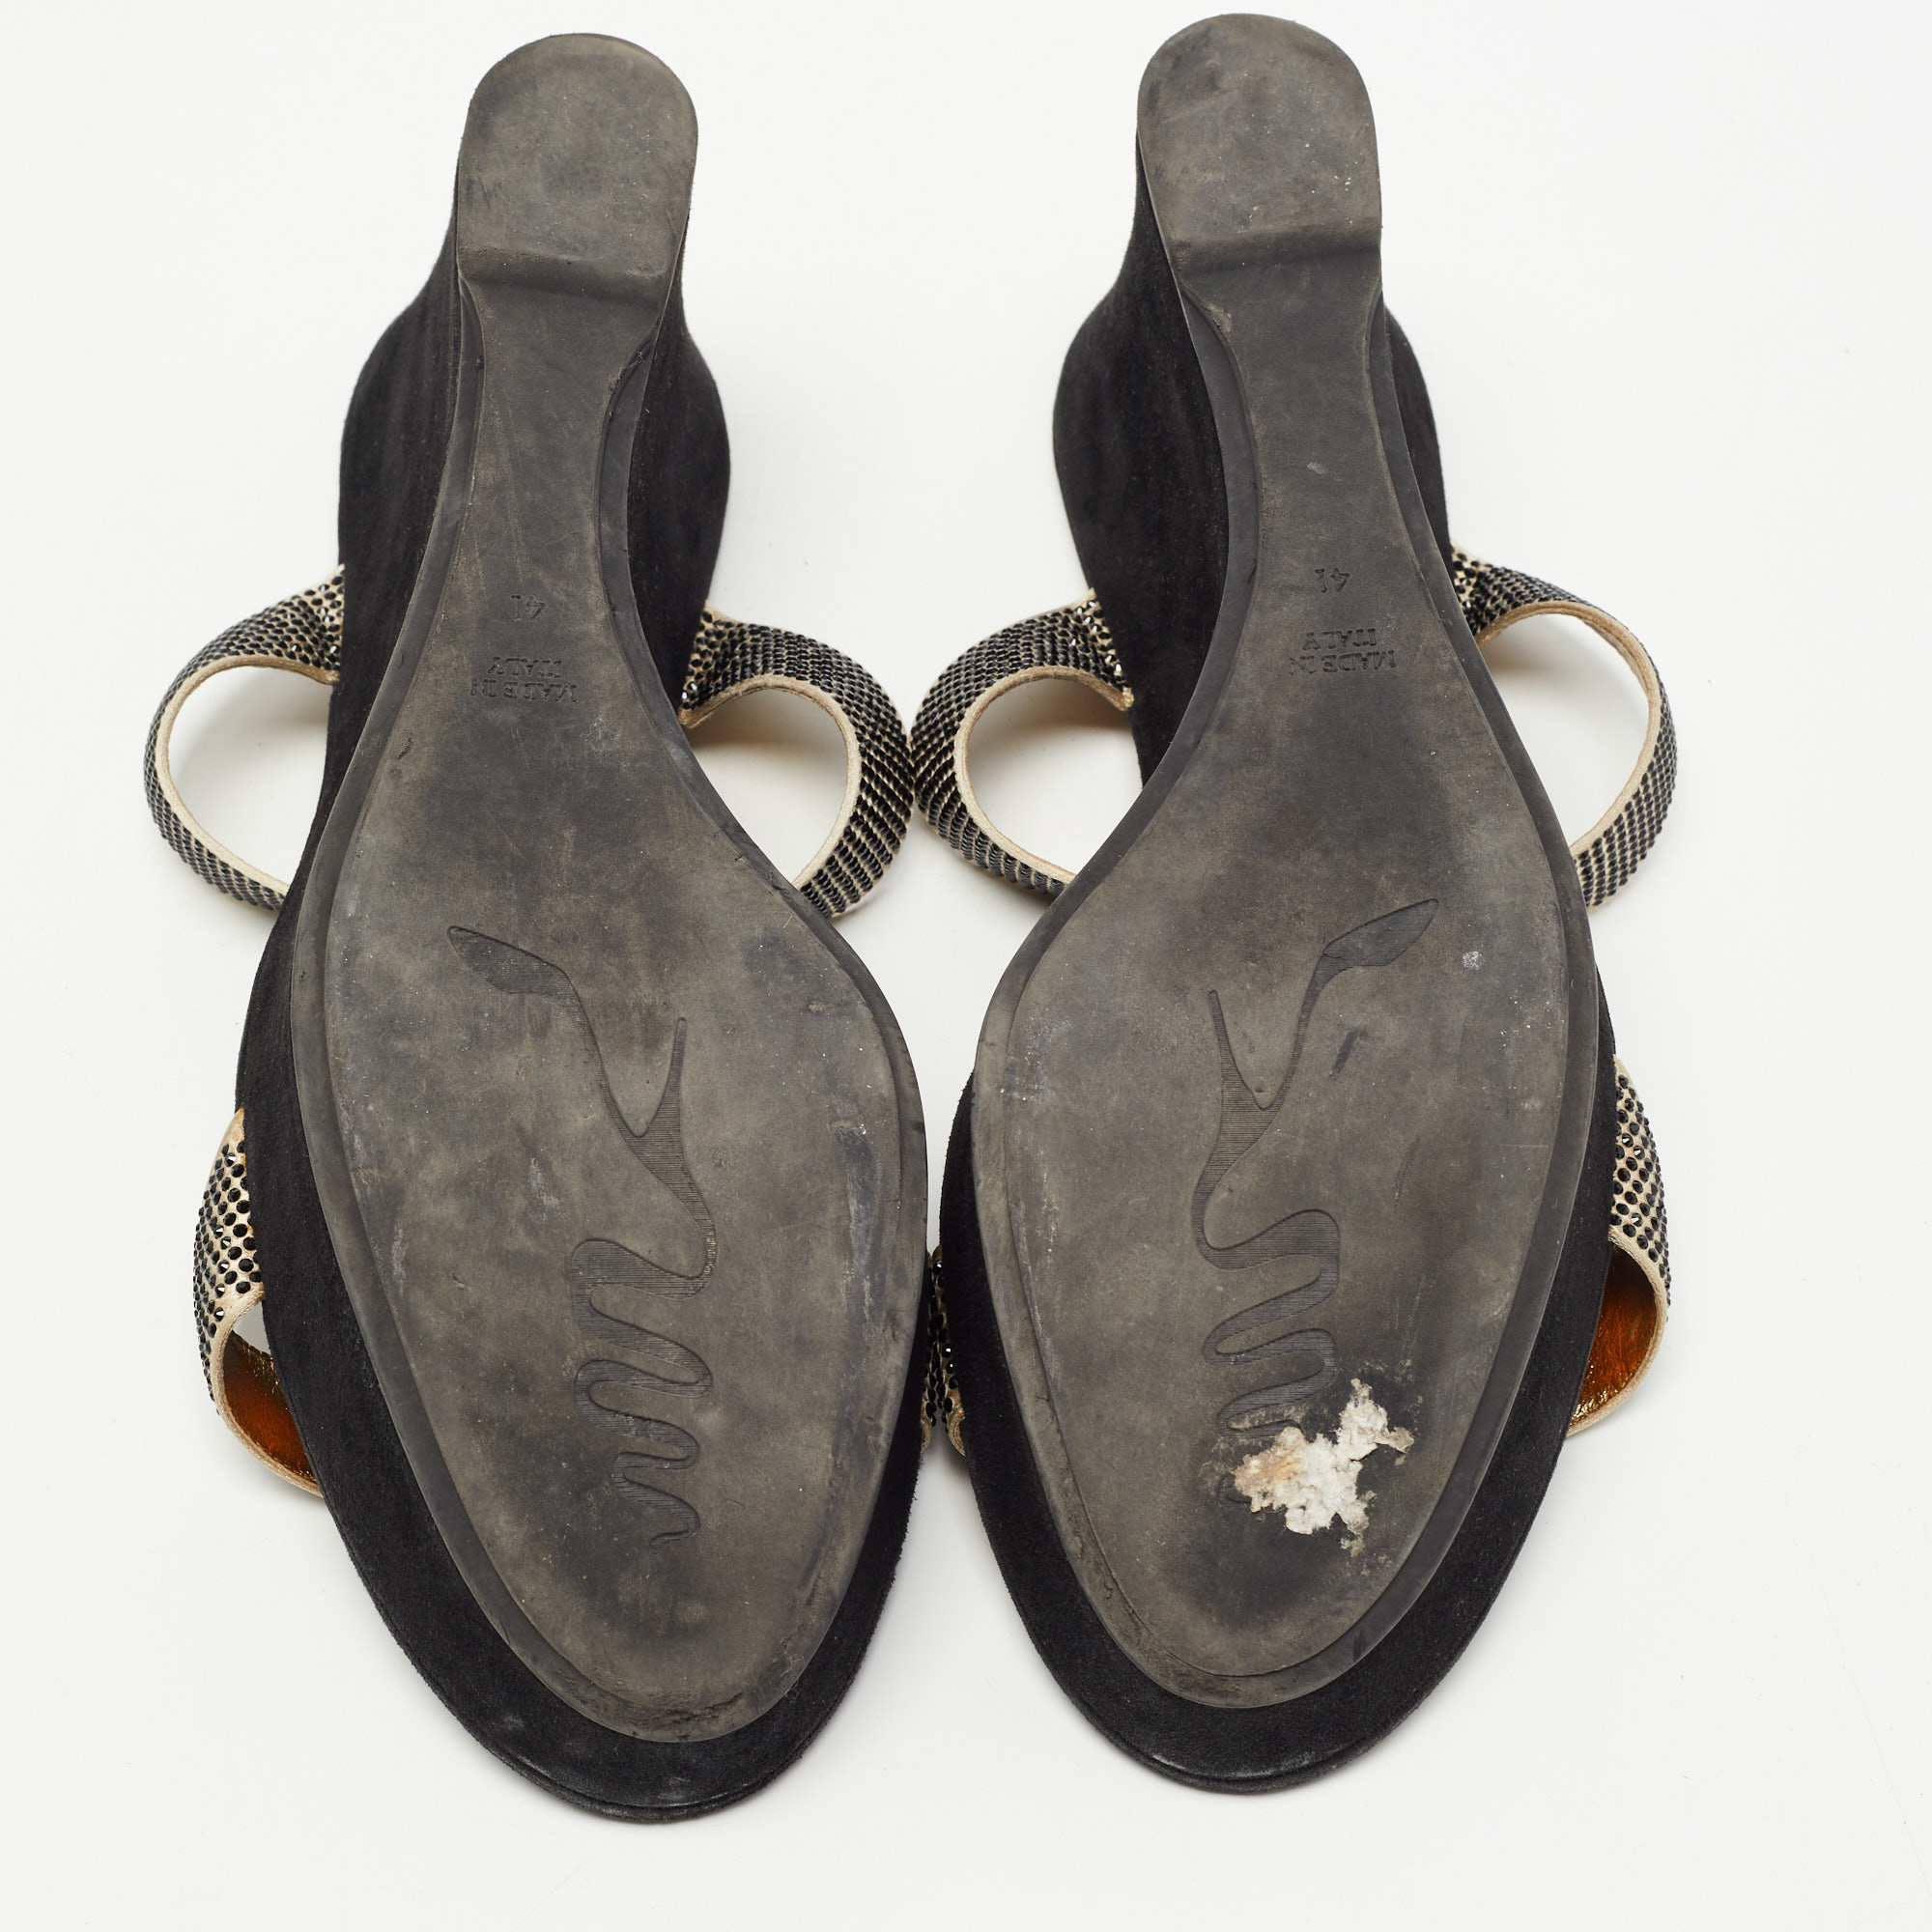 René Caovilla Gold/Black Crystal Embellished Satin Platform Wedge Slide Sandals Size 41